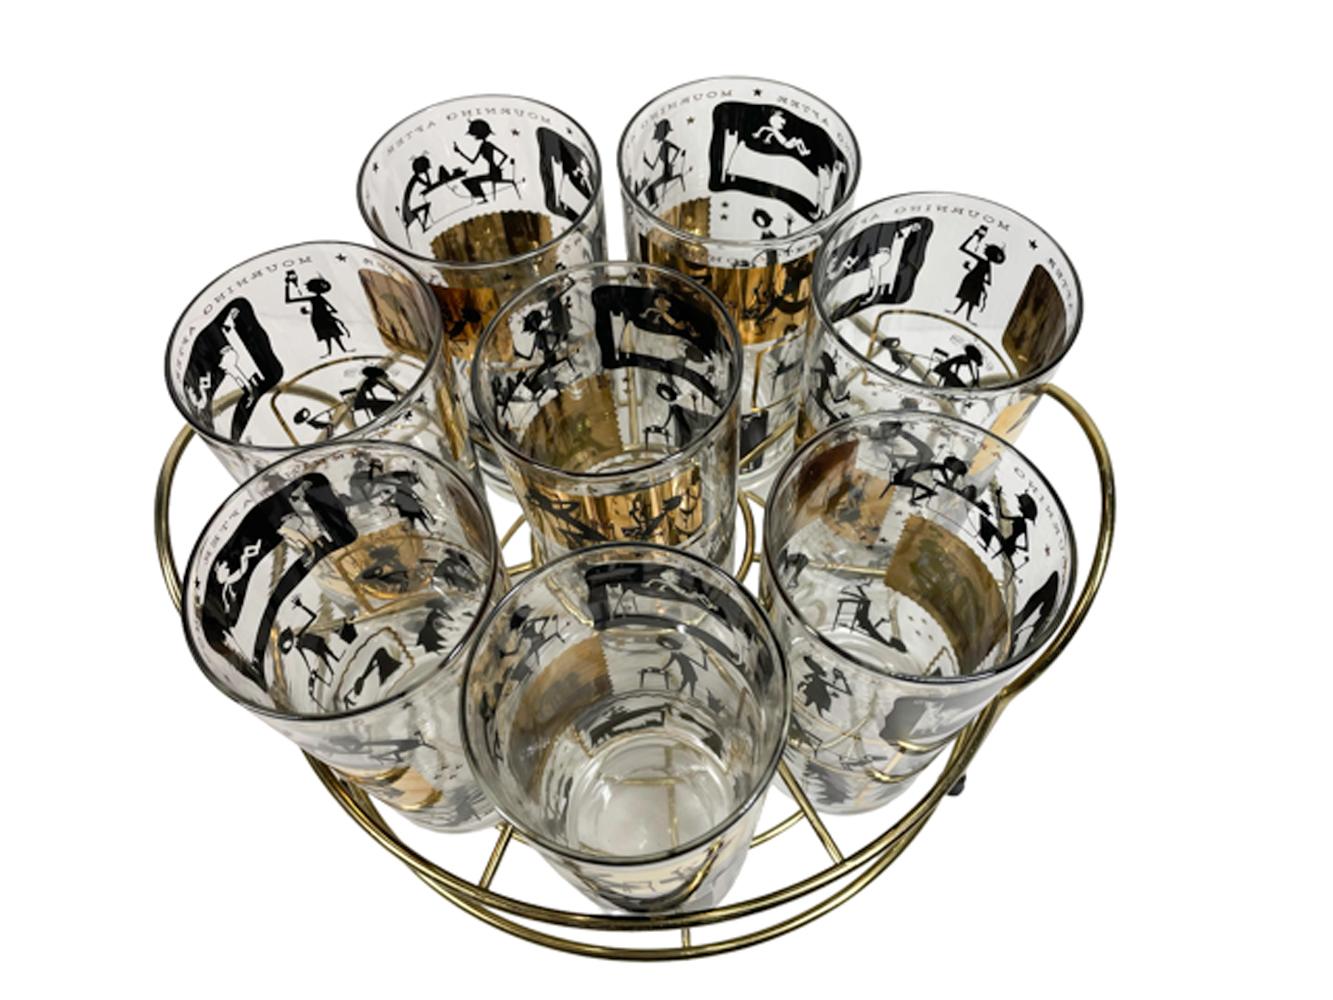 Set aus acht Cera Glass Highball-Gläsern in einem runden goldfarbenen Etui. Jedes der Gläser ist mit 22-karätigem Gold und schwarzer Emaille verziert und zeigt in drei Reihen vier Szenen, die Menschen bei verschiedenen morgendlichen Aktivitäten